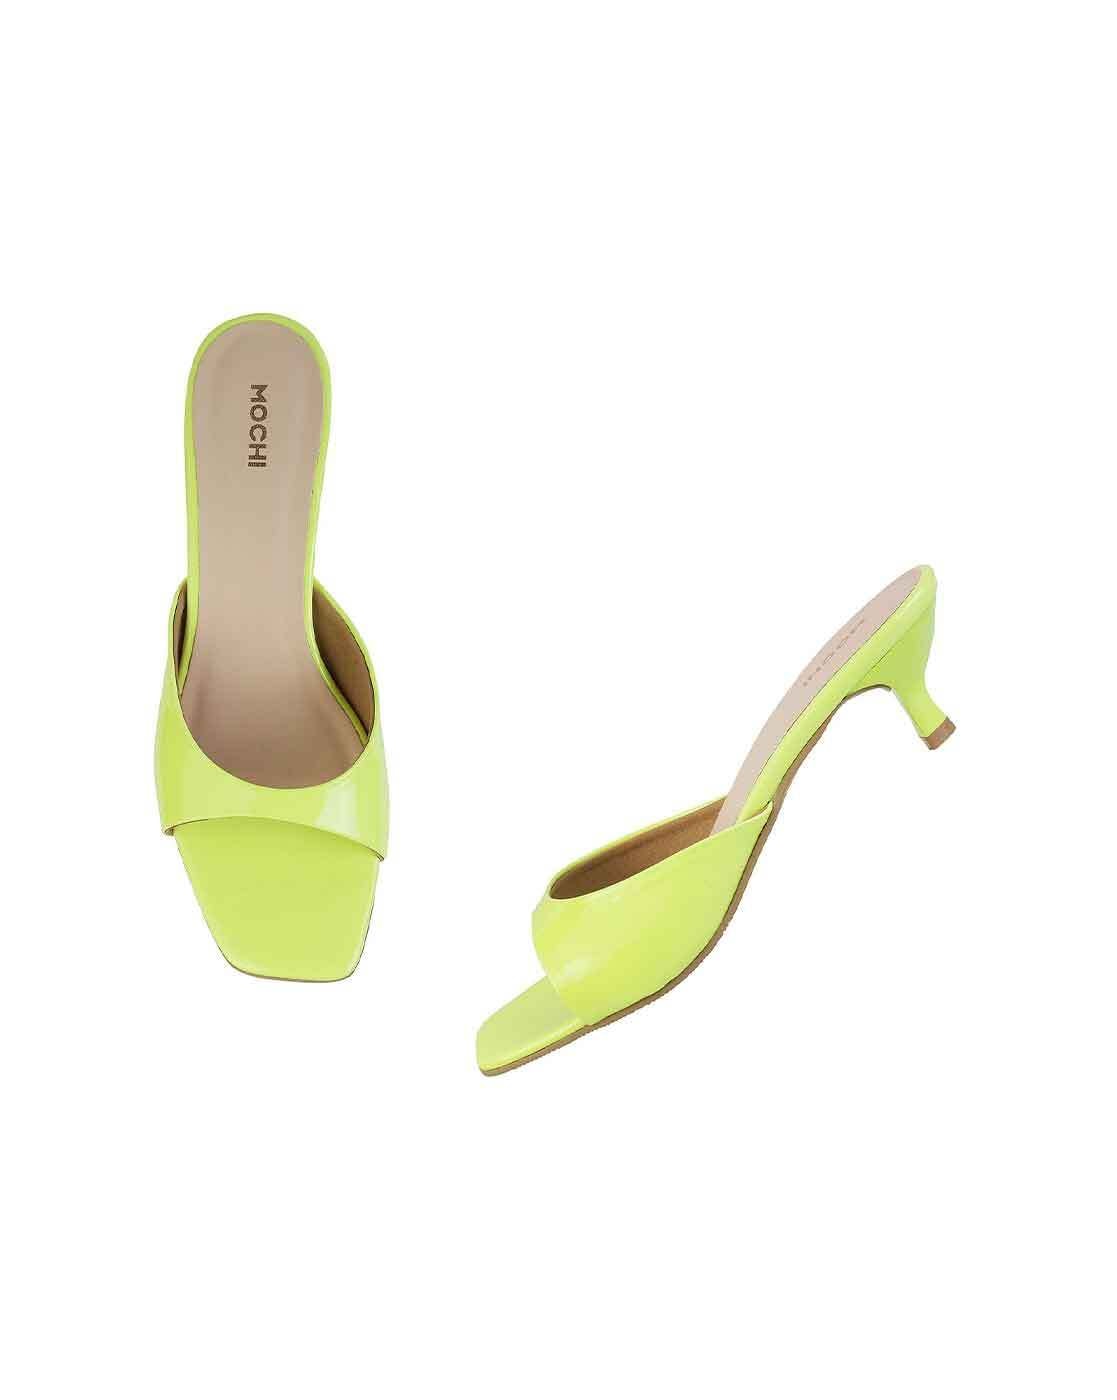 Buy Women Peach Ethnic Sandals Online | SKU: 35-122-80-36-Metro Shoes